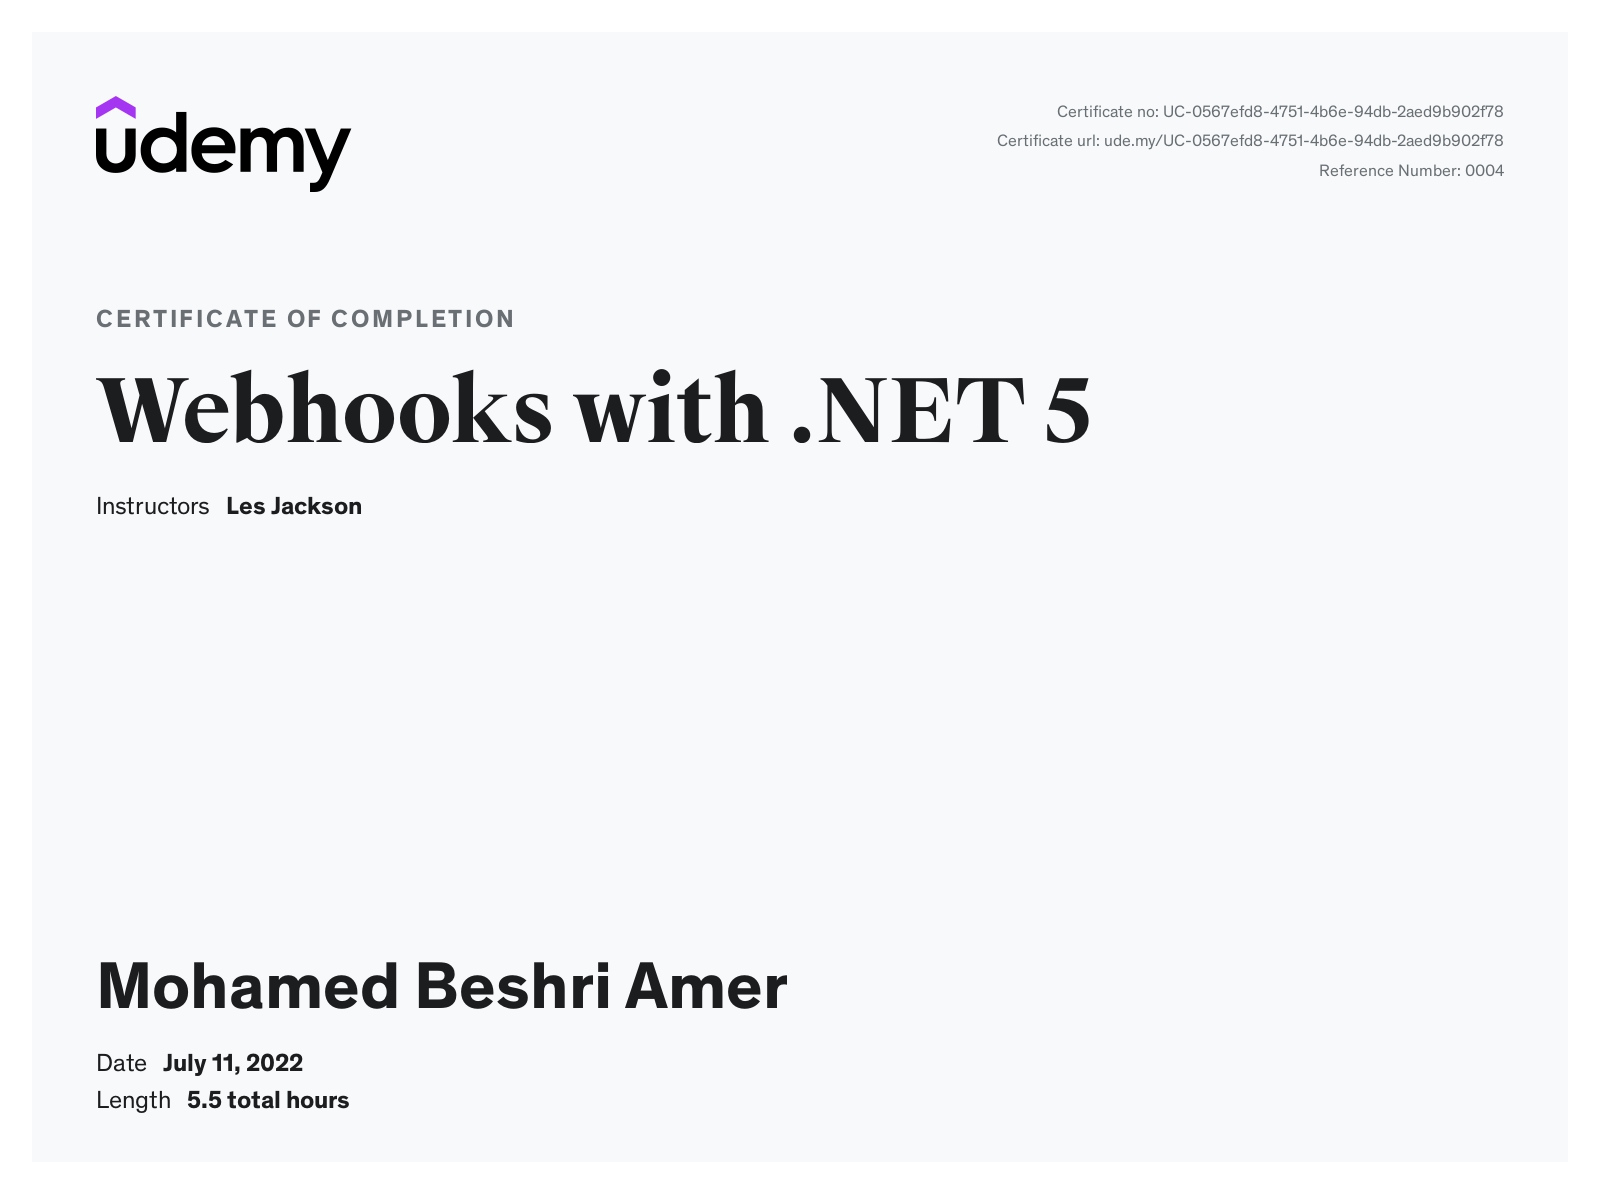 Mohamed Beshri Amer- Web hook